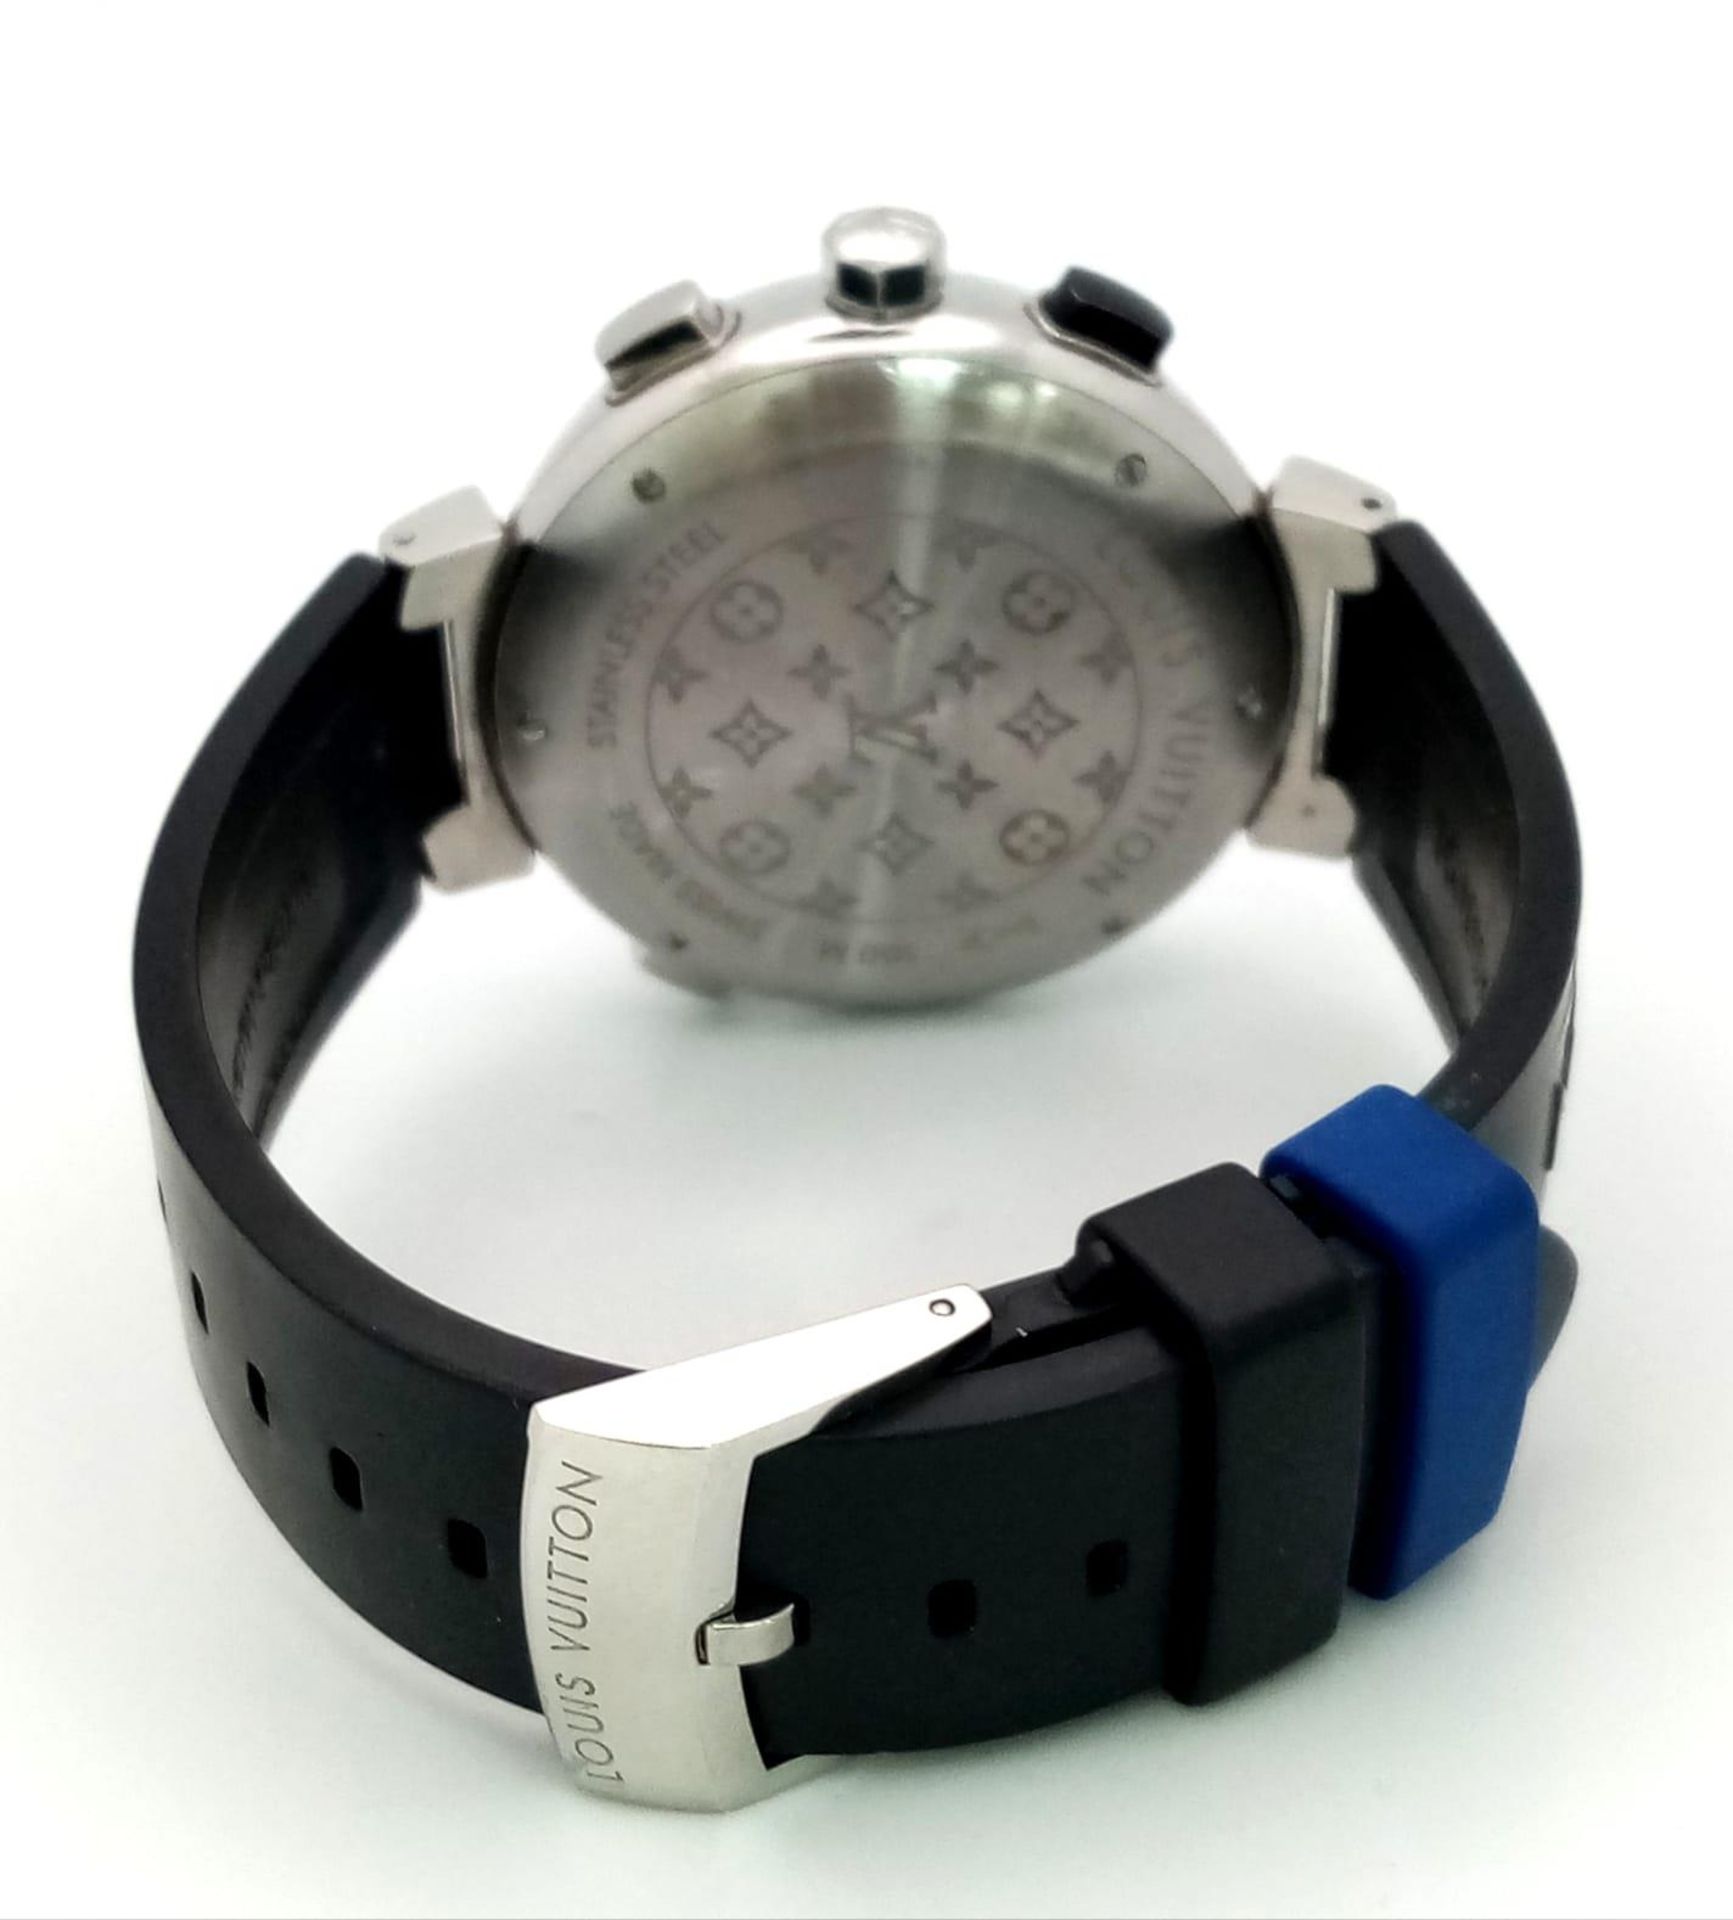 A Louis Vuitton Tambour Regatta Navy Men's Quartz Chronograph Watch. Black LV rubber strap. - Image 10 of 17